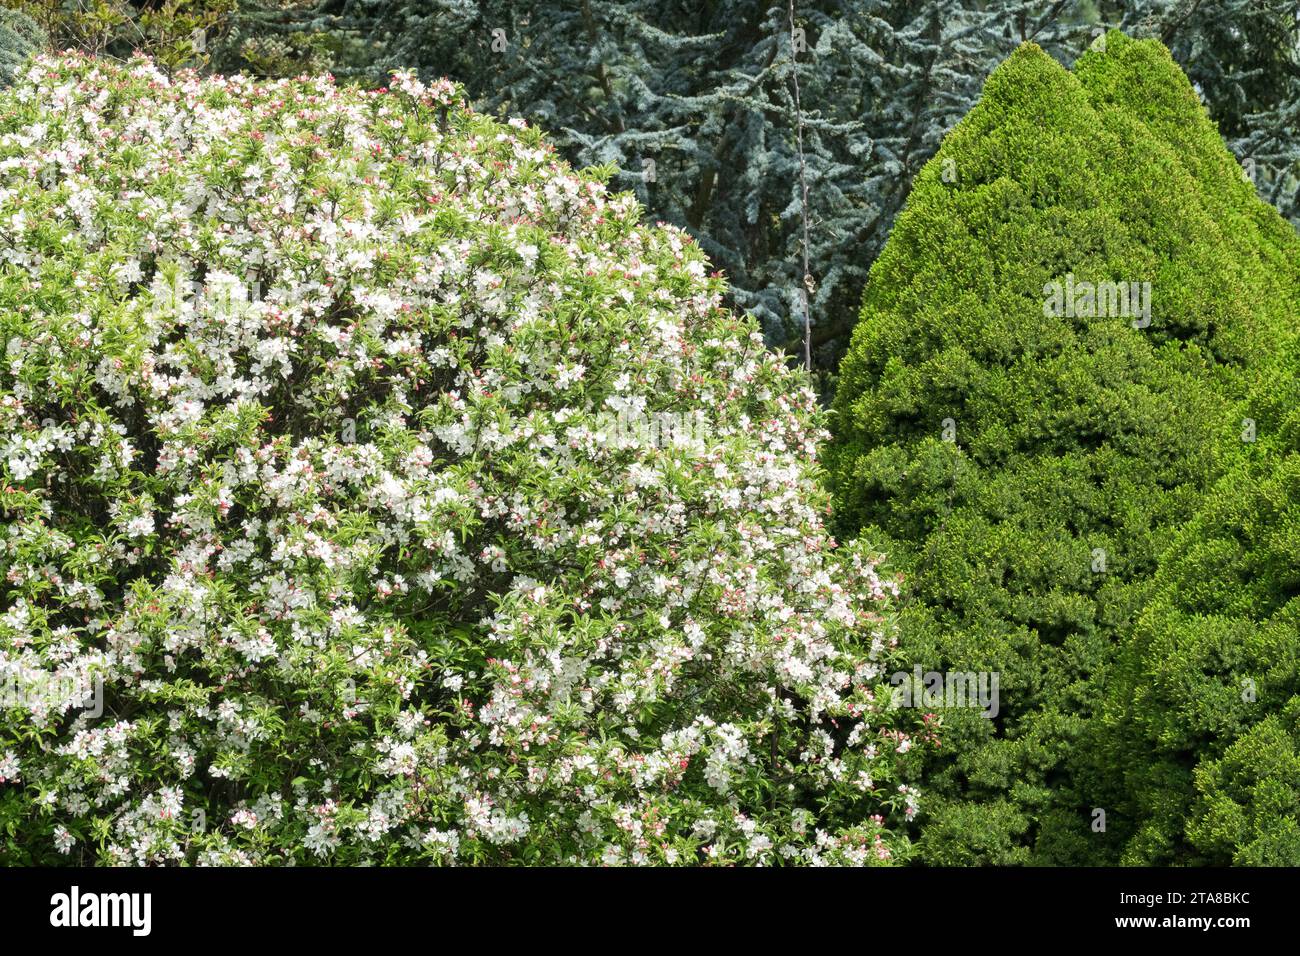 Forme de globe Malus 'Pomzai' et Picea glauca 'CONICA' dans le jardin de printemps Banque D'Images